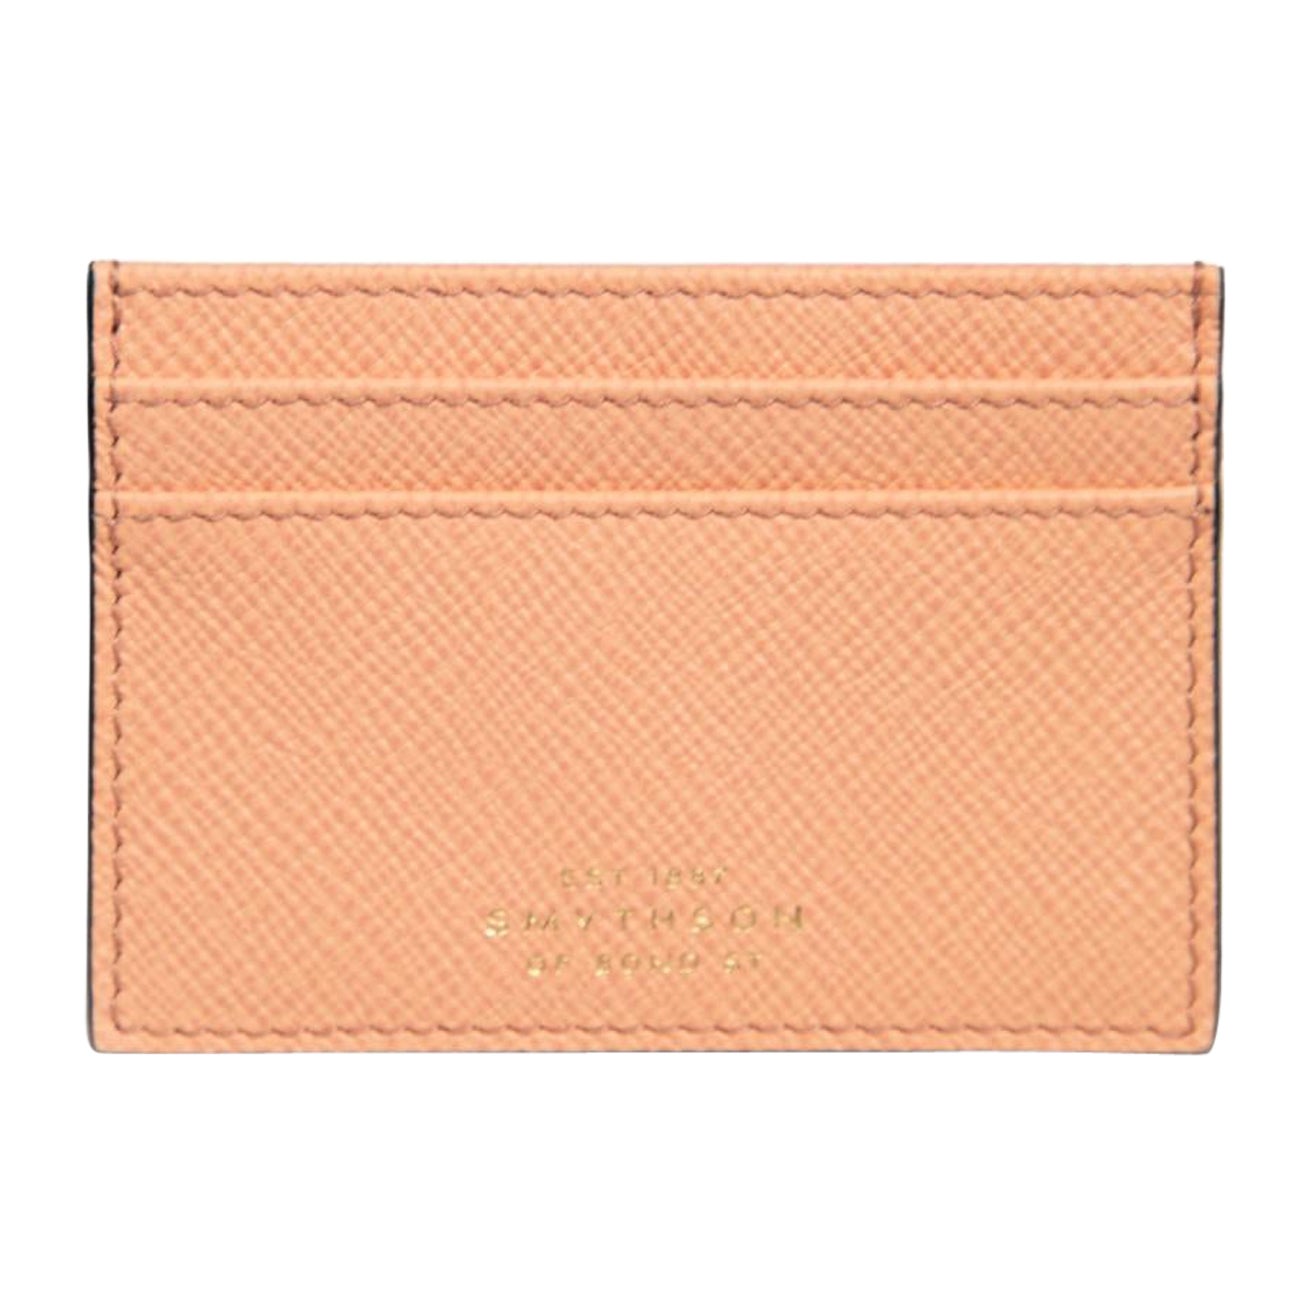 Smythson Salmon Pink Leather Cardholder For Sale